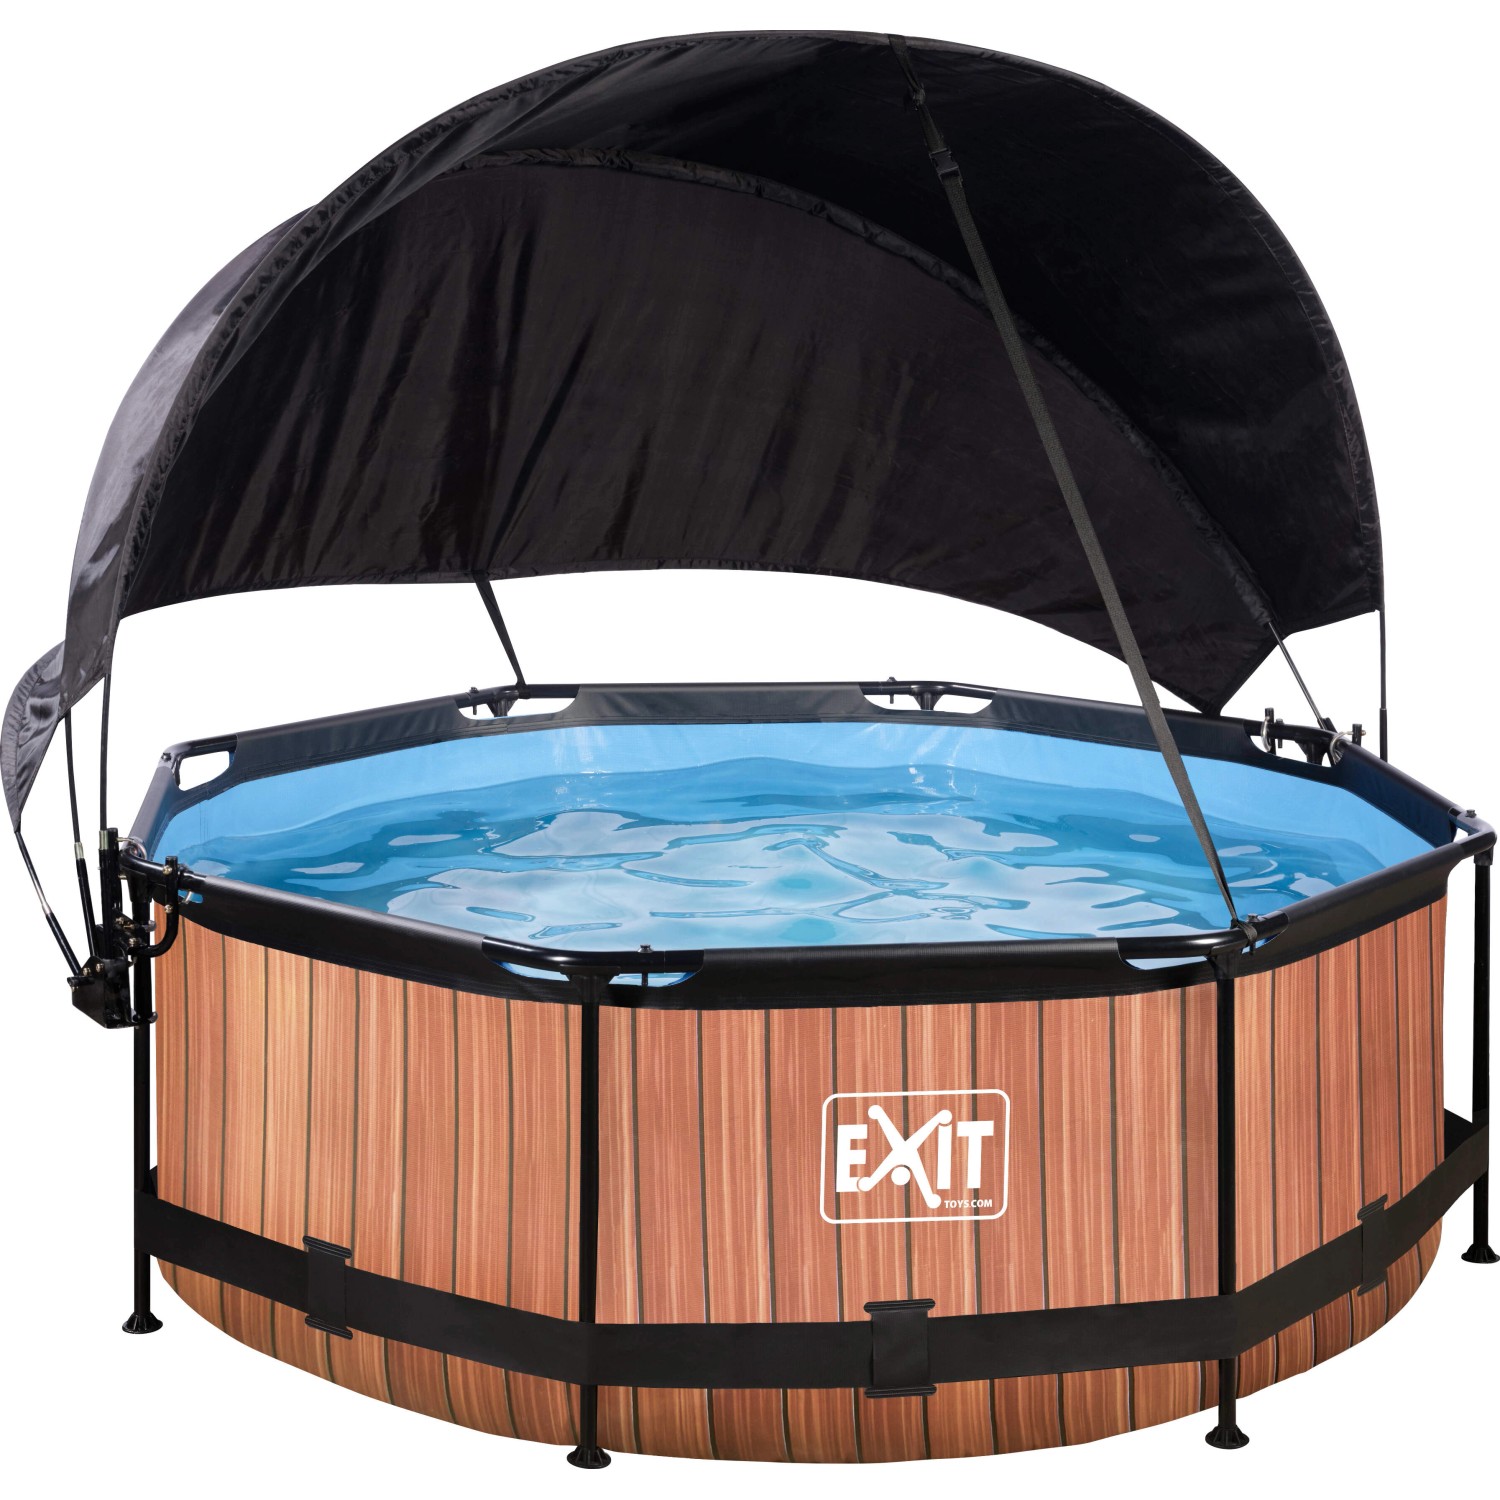 EXIT Wood Pool Braun ø 244 x 76 cm m. Filterpump u. Sonnensegel günstig online kaufen